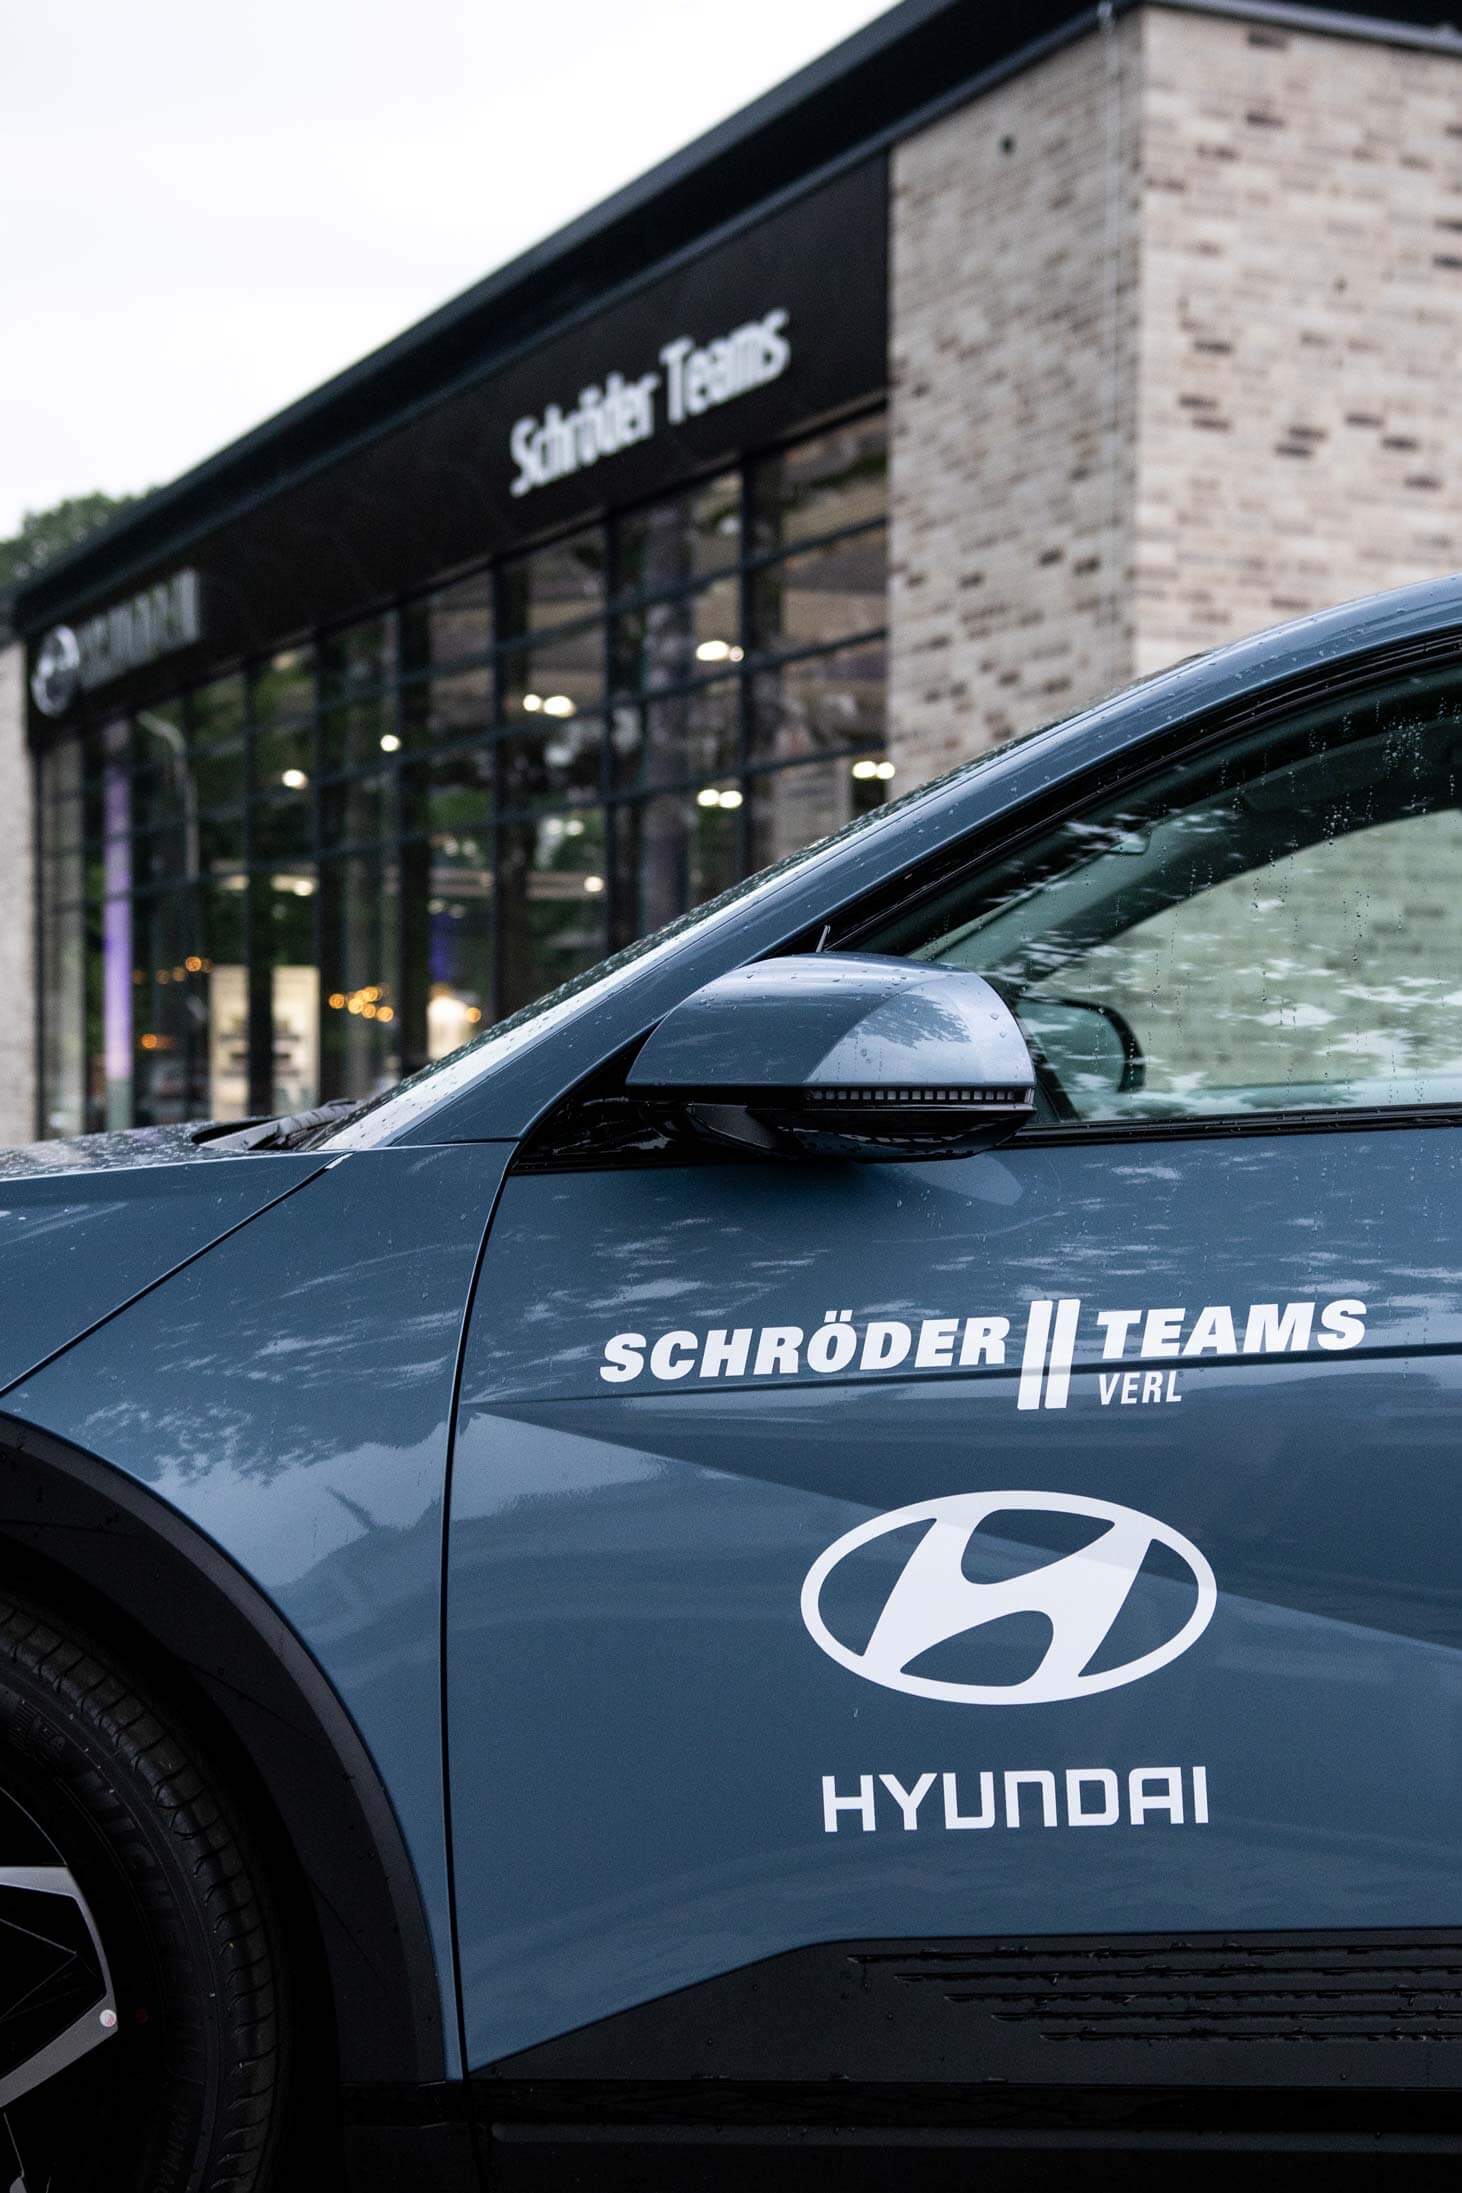 Schröder Team feiert Hyundai Neueröffnung in Verl